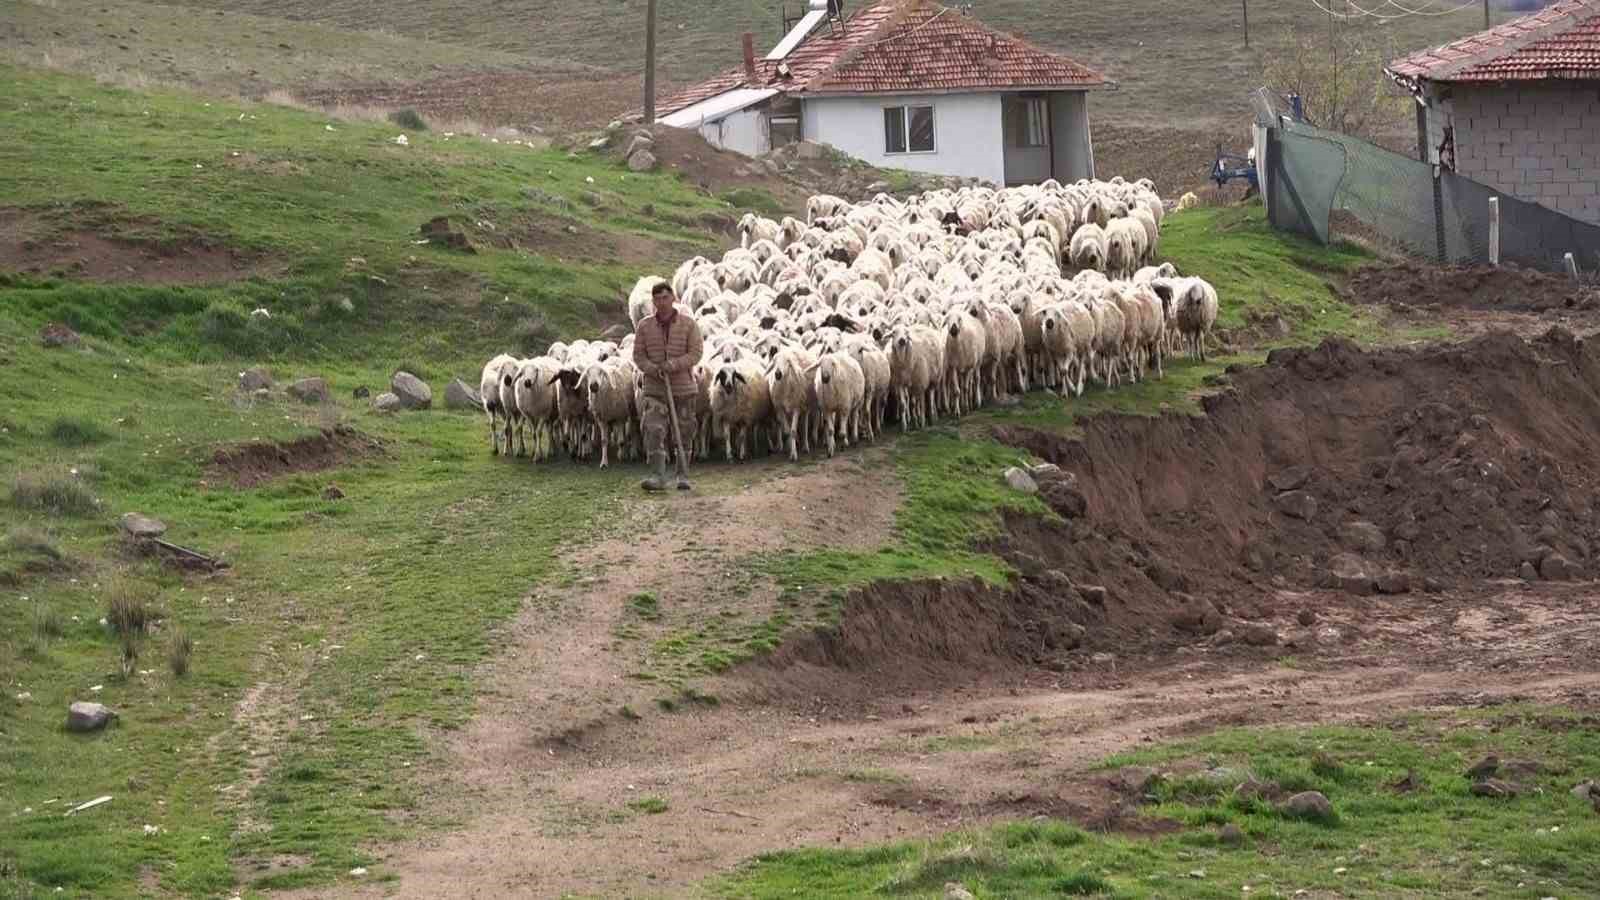 öğretmenliği bıraktı, köyüne dönüp koyun yetiştiriciliğine başladı